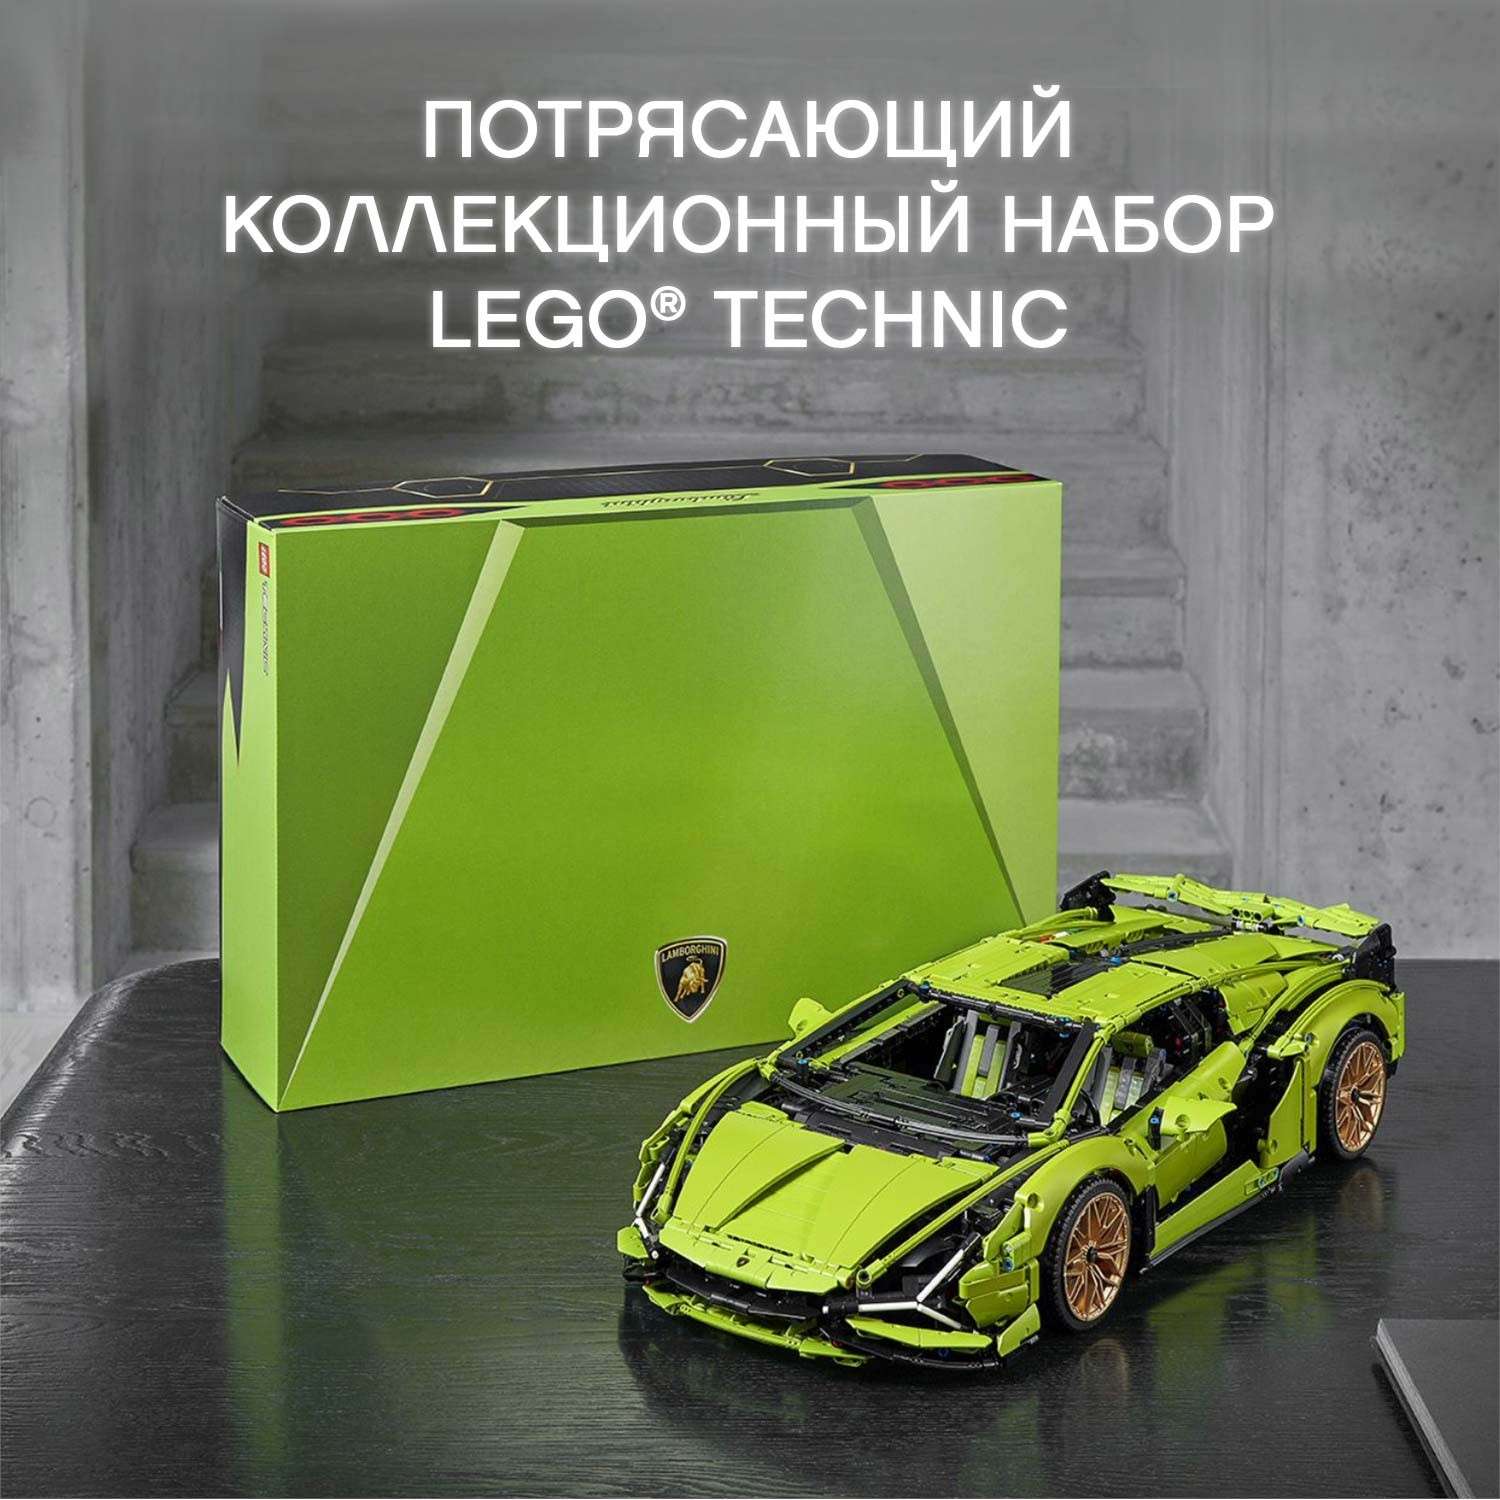 Конструктор LEGO Technic Lamborghini Sian FKP 37 42115 - фото 4